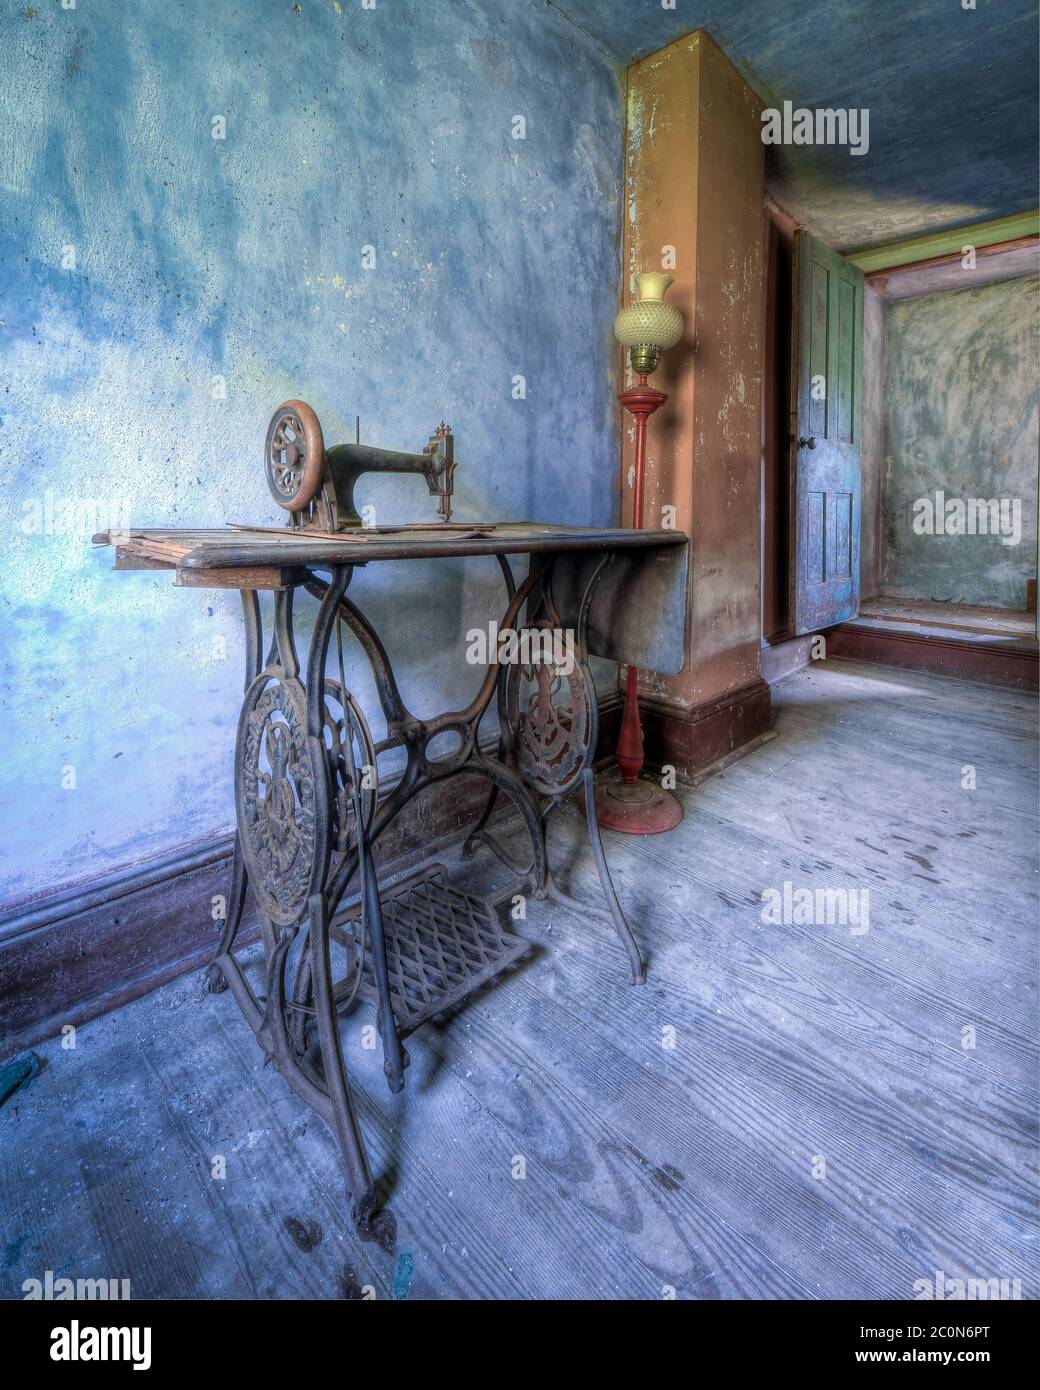 Machine à coudre vintage dans une maison abandonnée Banque D'Images